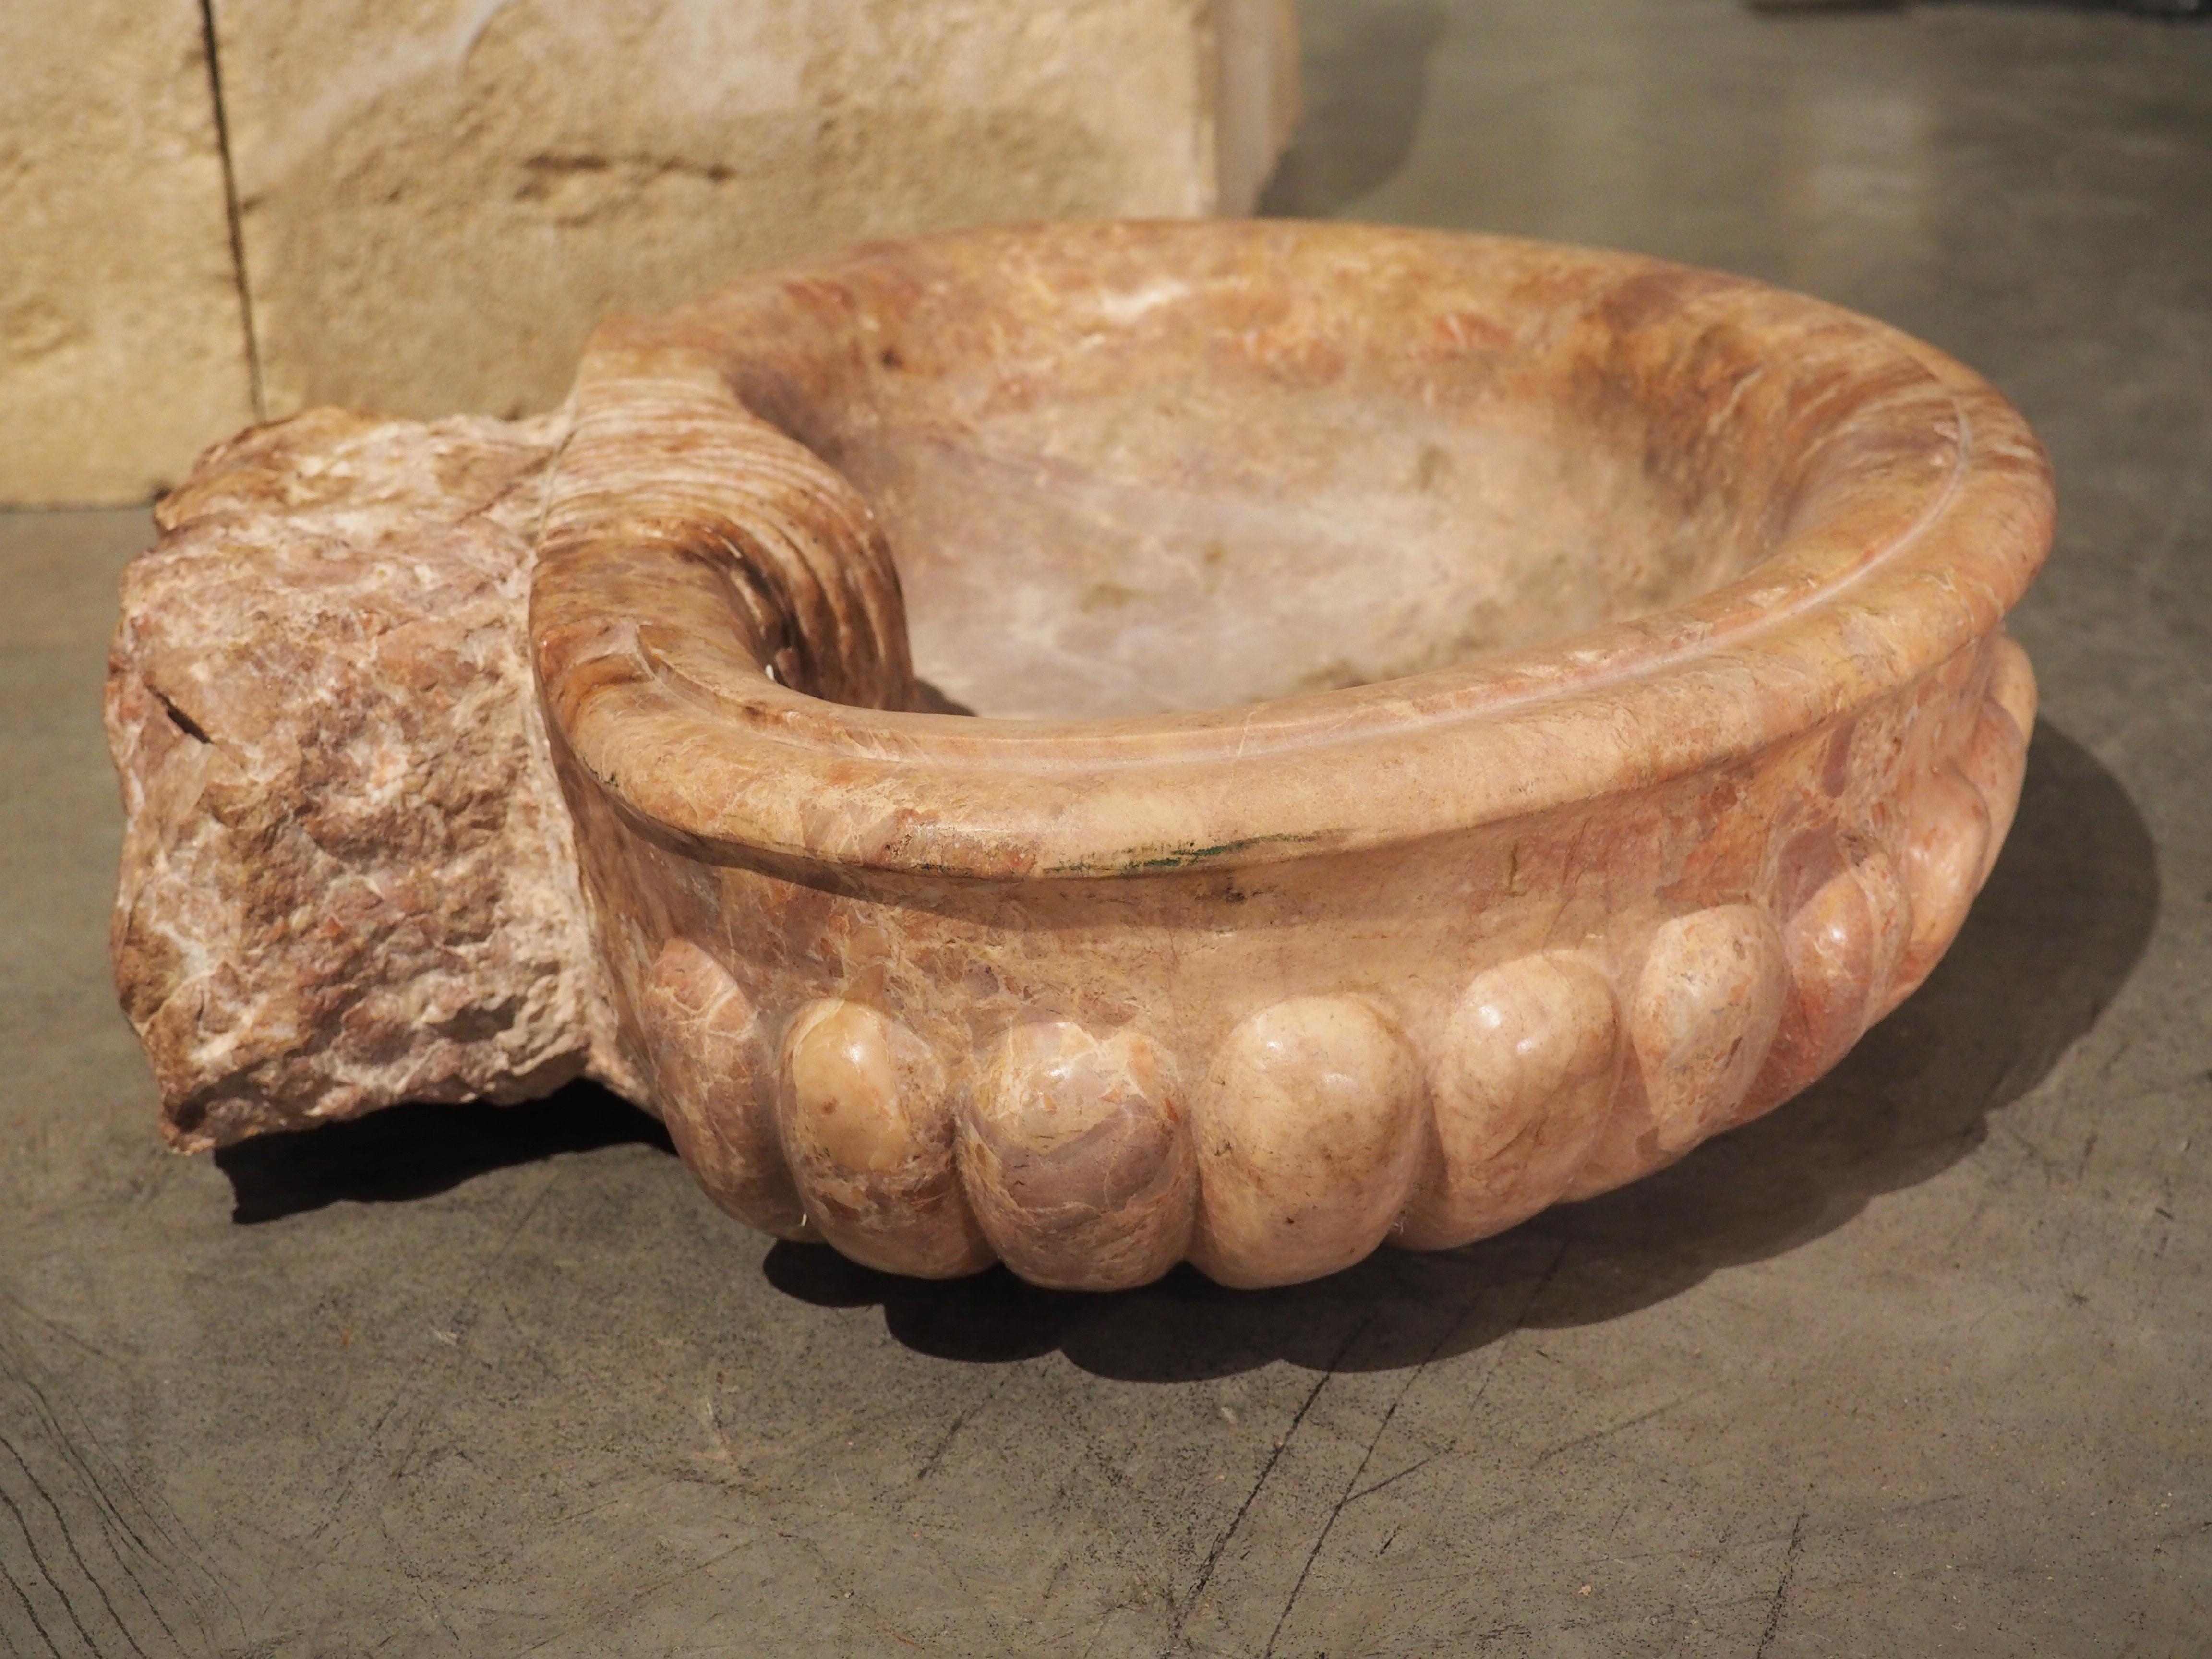 Ce bassin en marbre a été sculpté à la main dans un beau marbre breccia pernice. La brèche pernice est extraite à Vérone, dans le nord-est de l'Italie, et comme tout marbre brèche, elle est connue pour ses grandes inclusions angulaires. Notre bassin